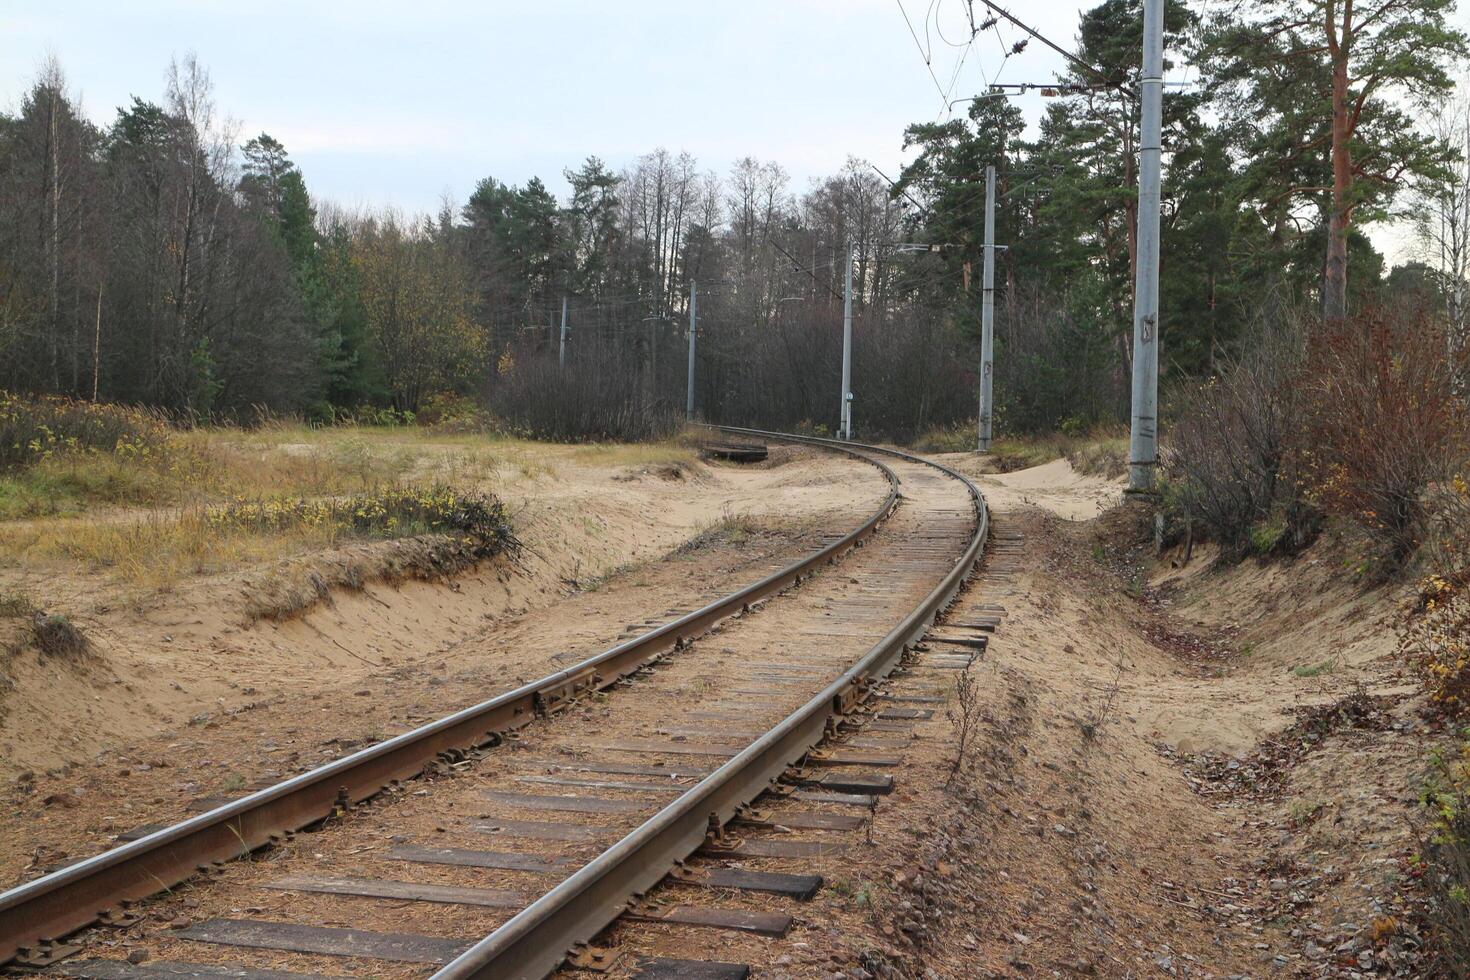 Ferrovia, a rastrear voltas, lá estão pilares de a estrada, floresta paisagem, cedo outono foto